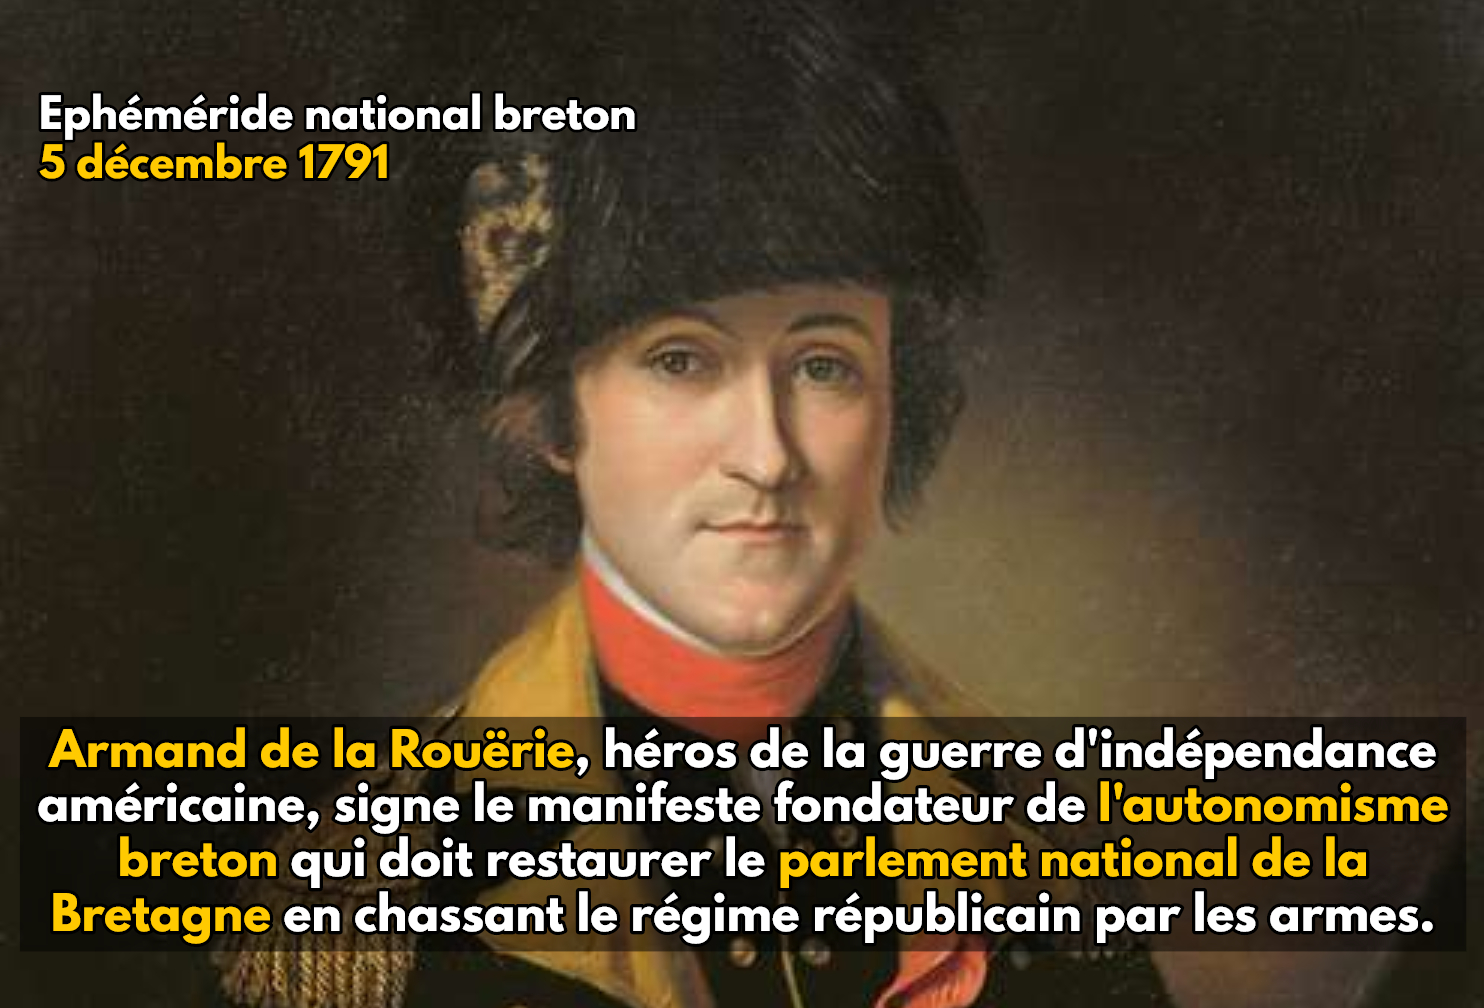 Ephéméride national breton : 5 décembre 1791, Armand de la Rouërie signe le manifeste fondateur de l’autonomisme breton